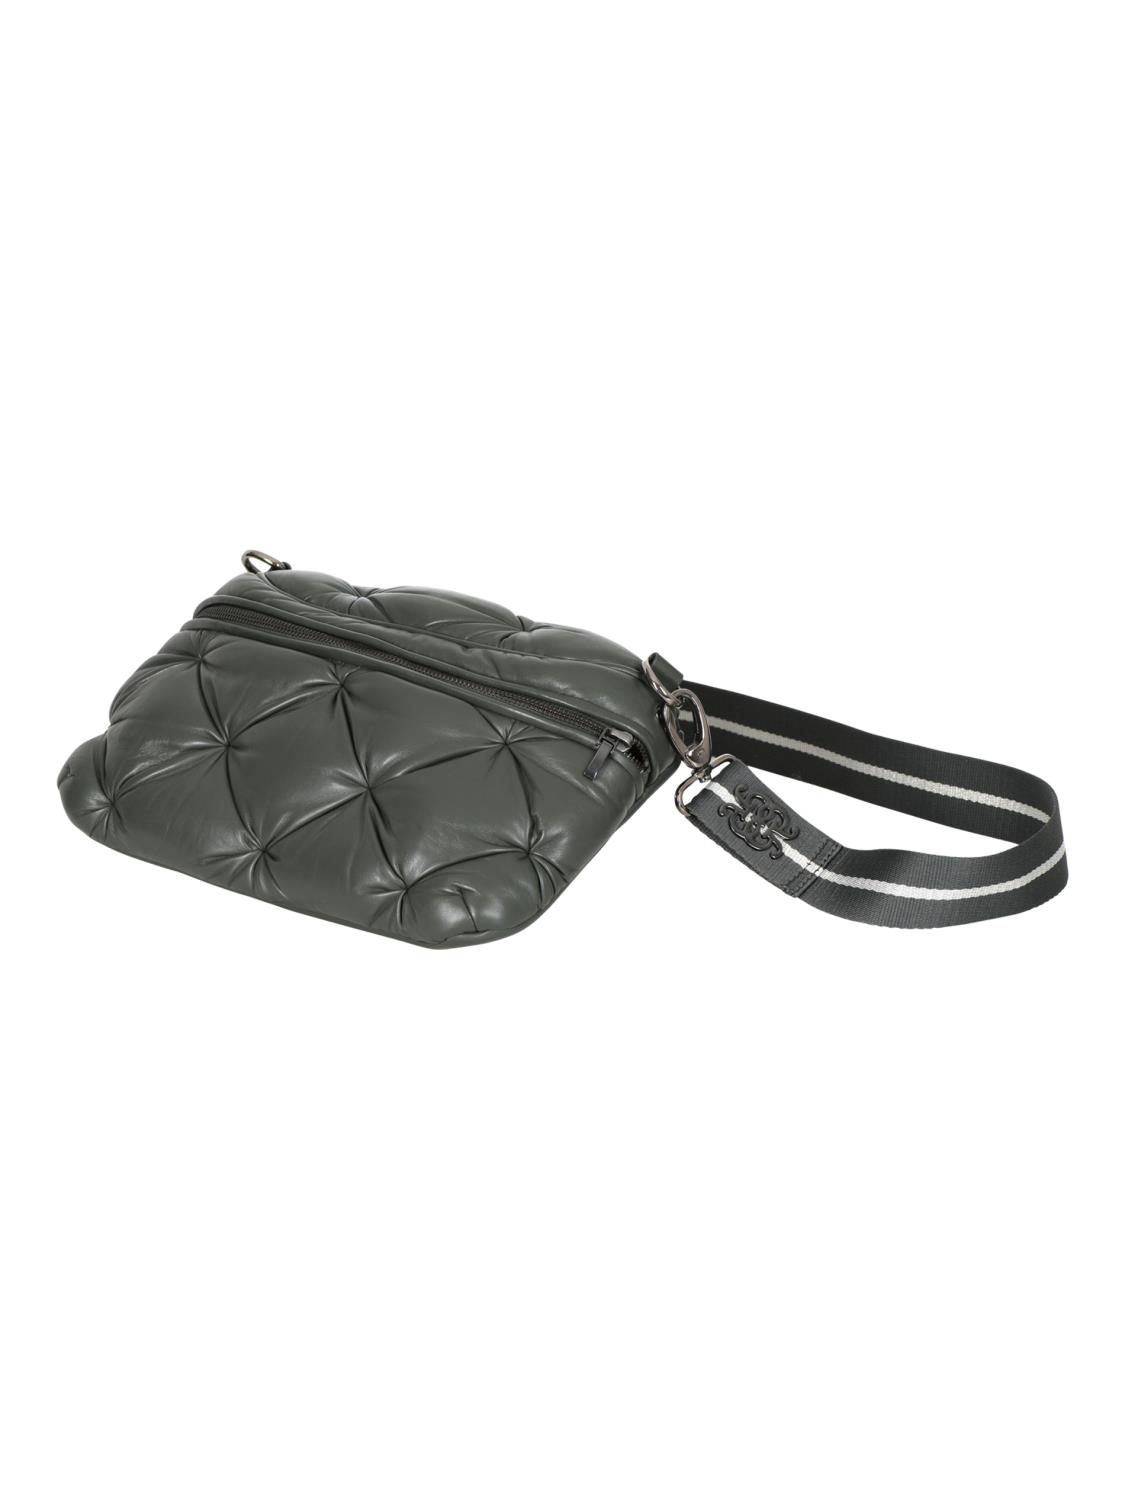 Elanor Leather Bum bag